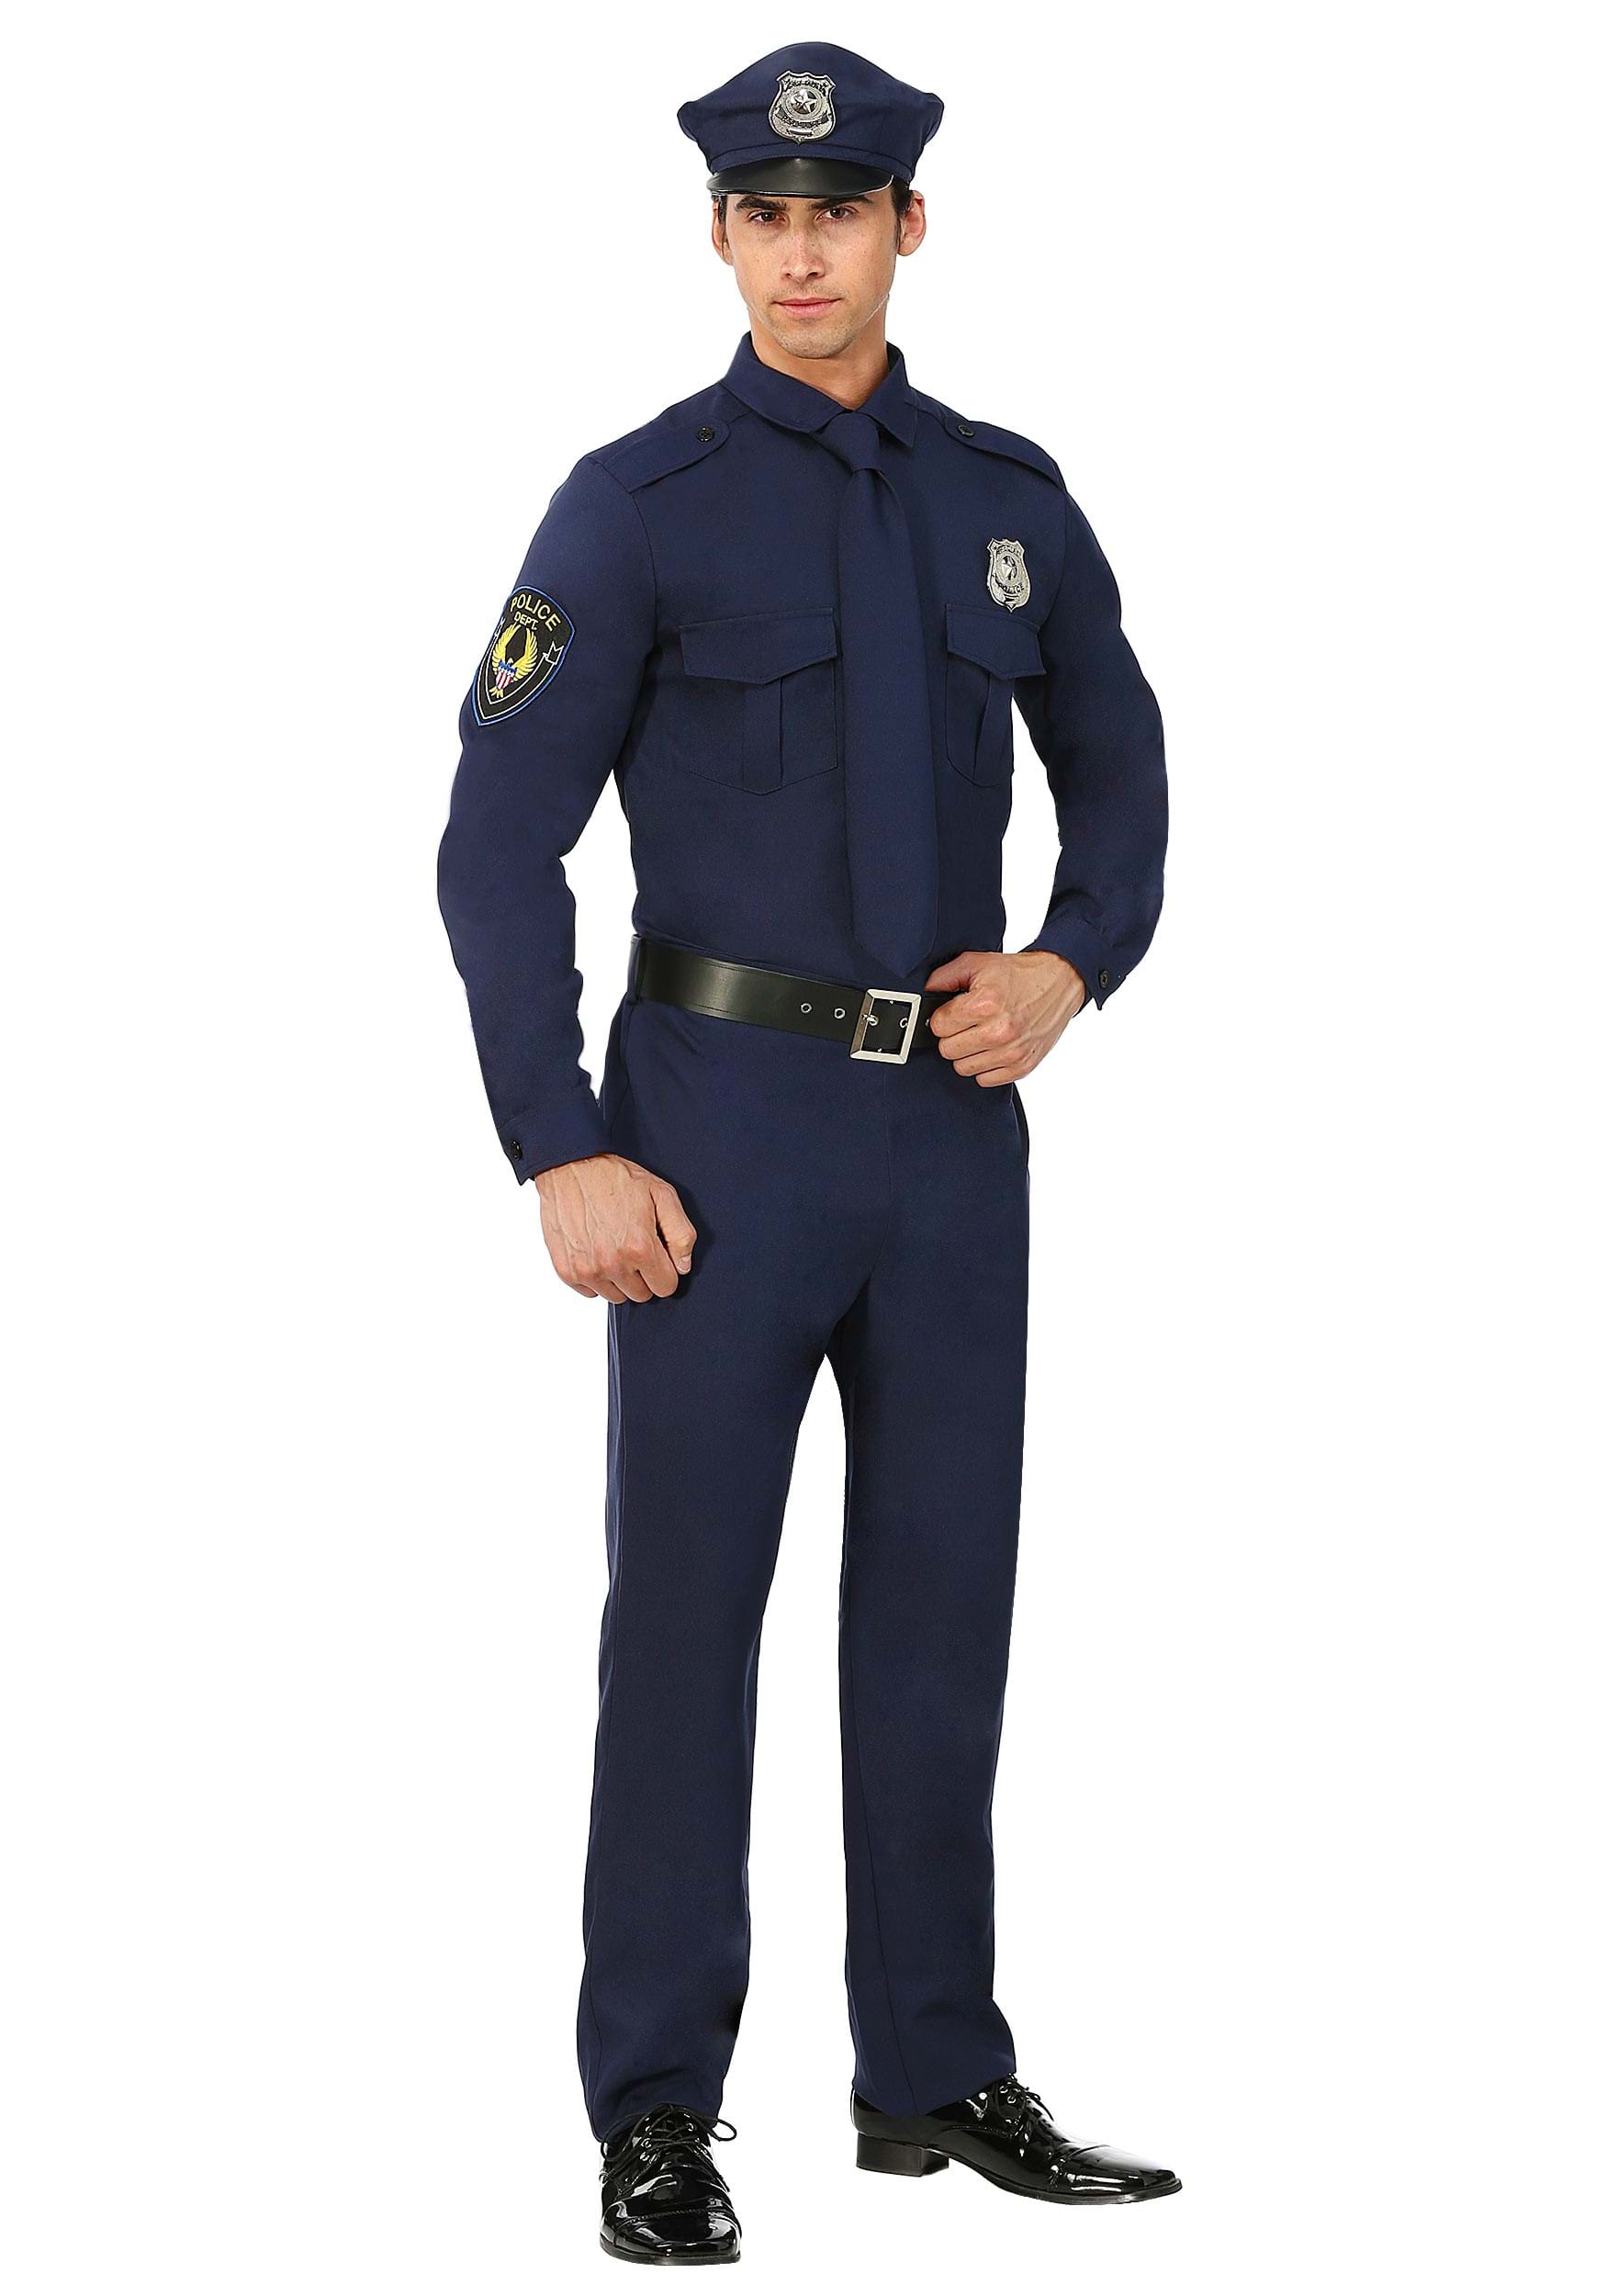 Mens Cop Costume | Mens Law Enforcement Costume